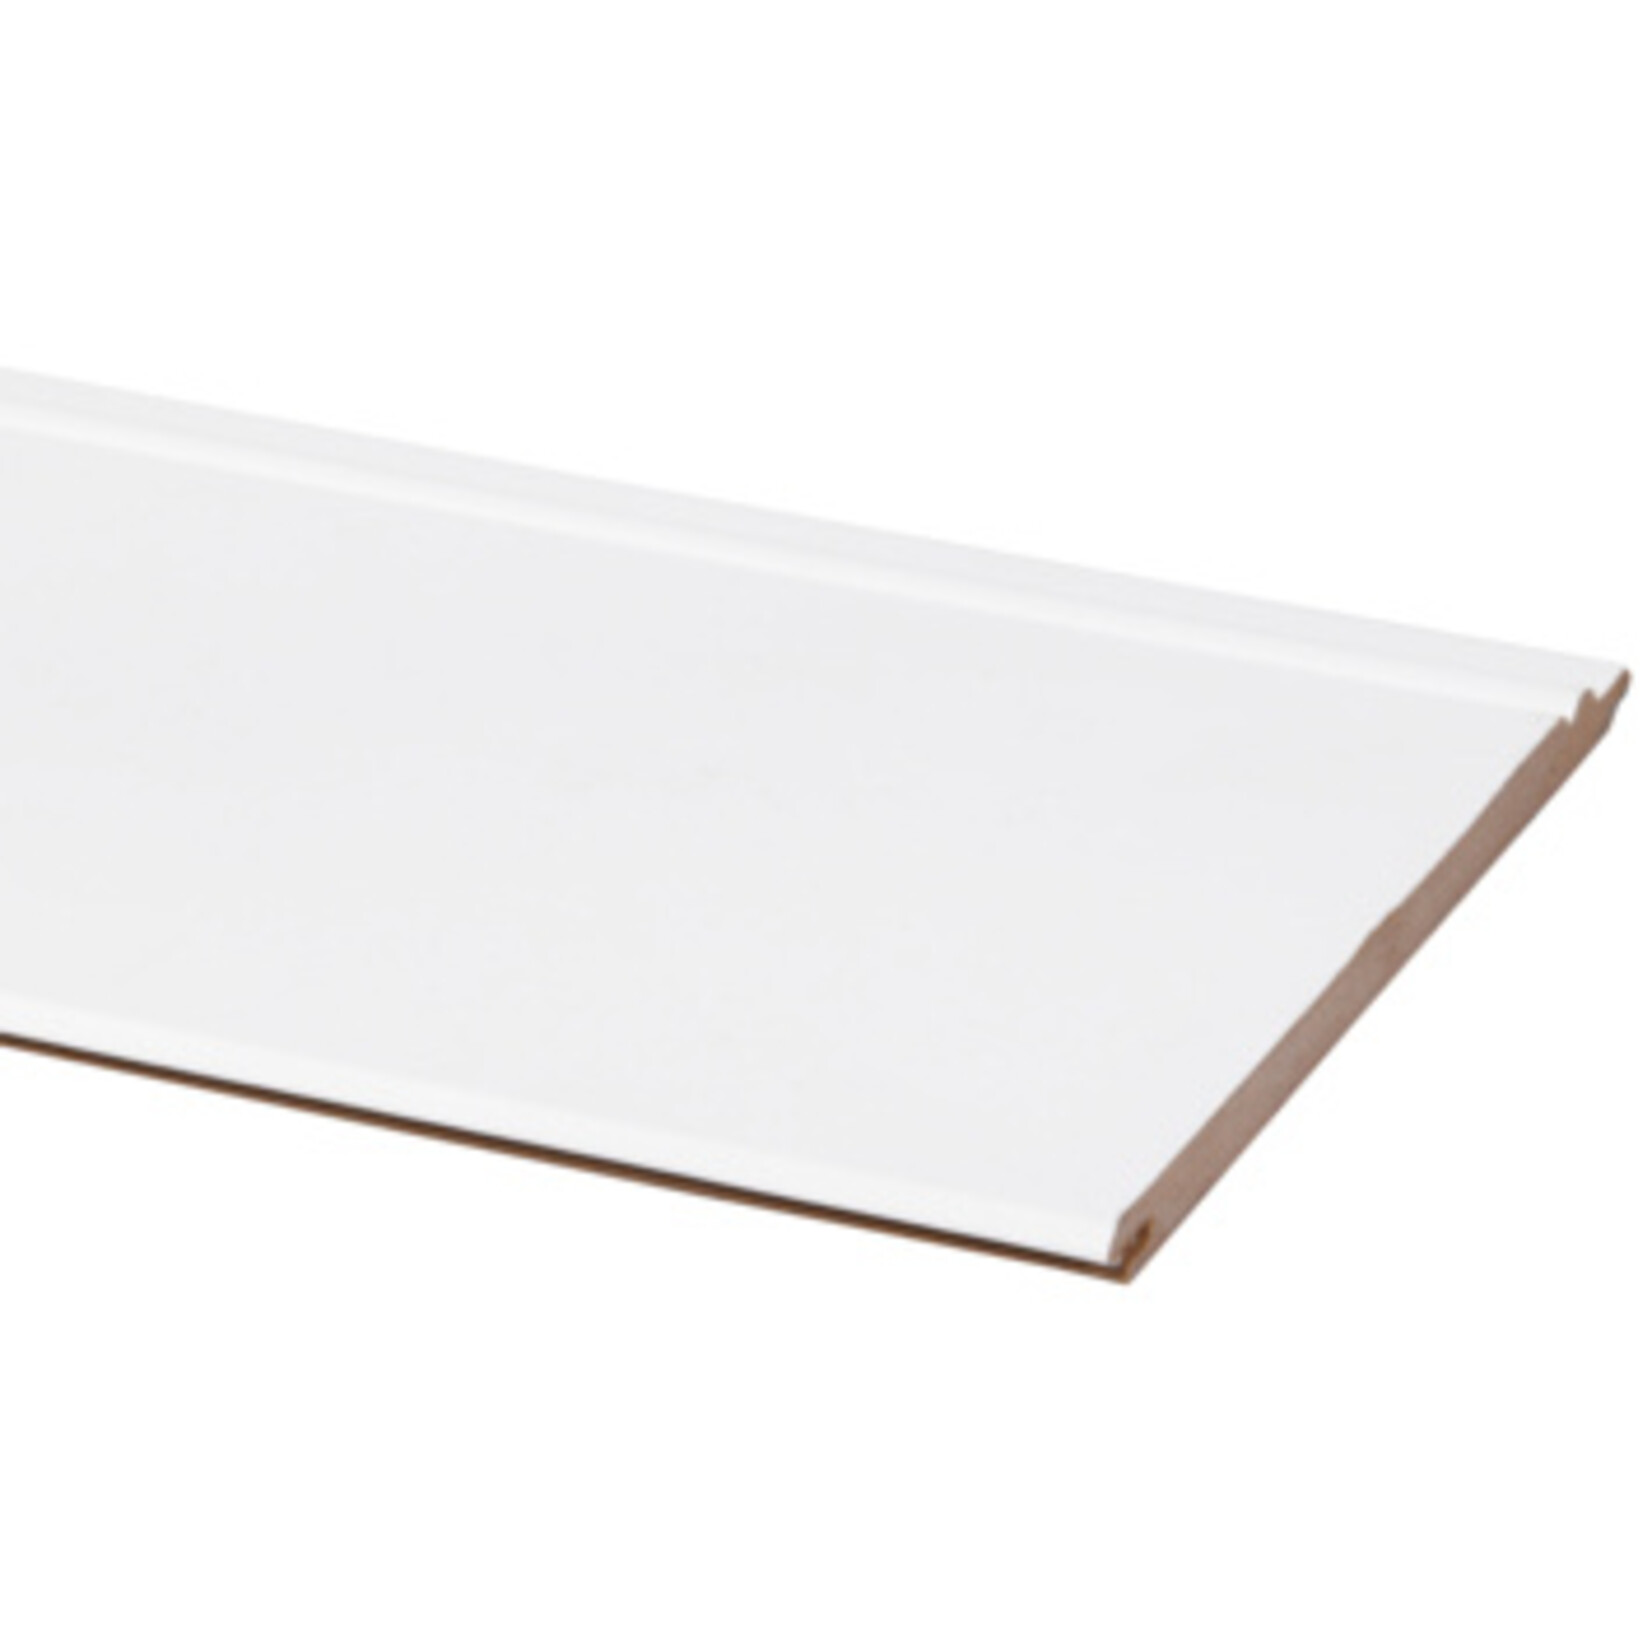 Cando Wand-en plafondpaneel MDF kraal wit gegrond 8x135 mm 260 cm 5 stuks